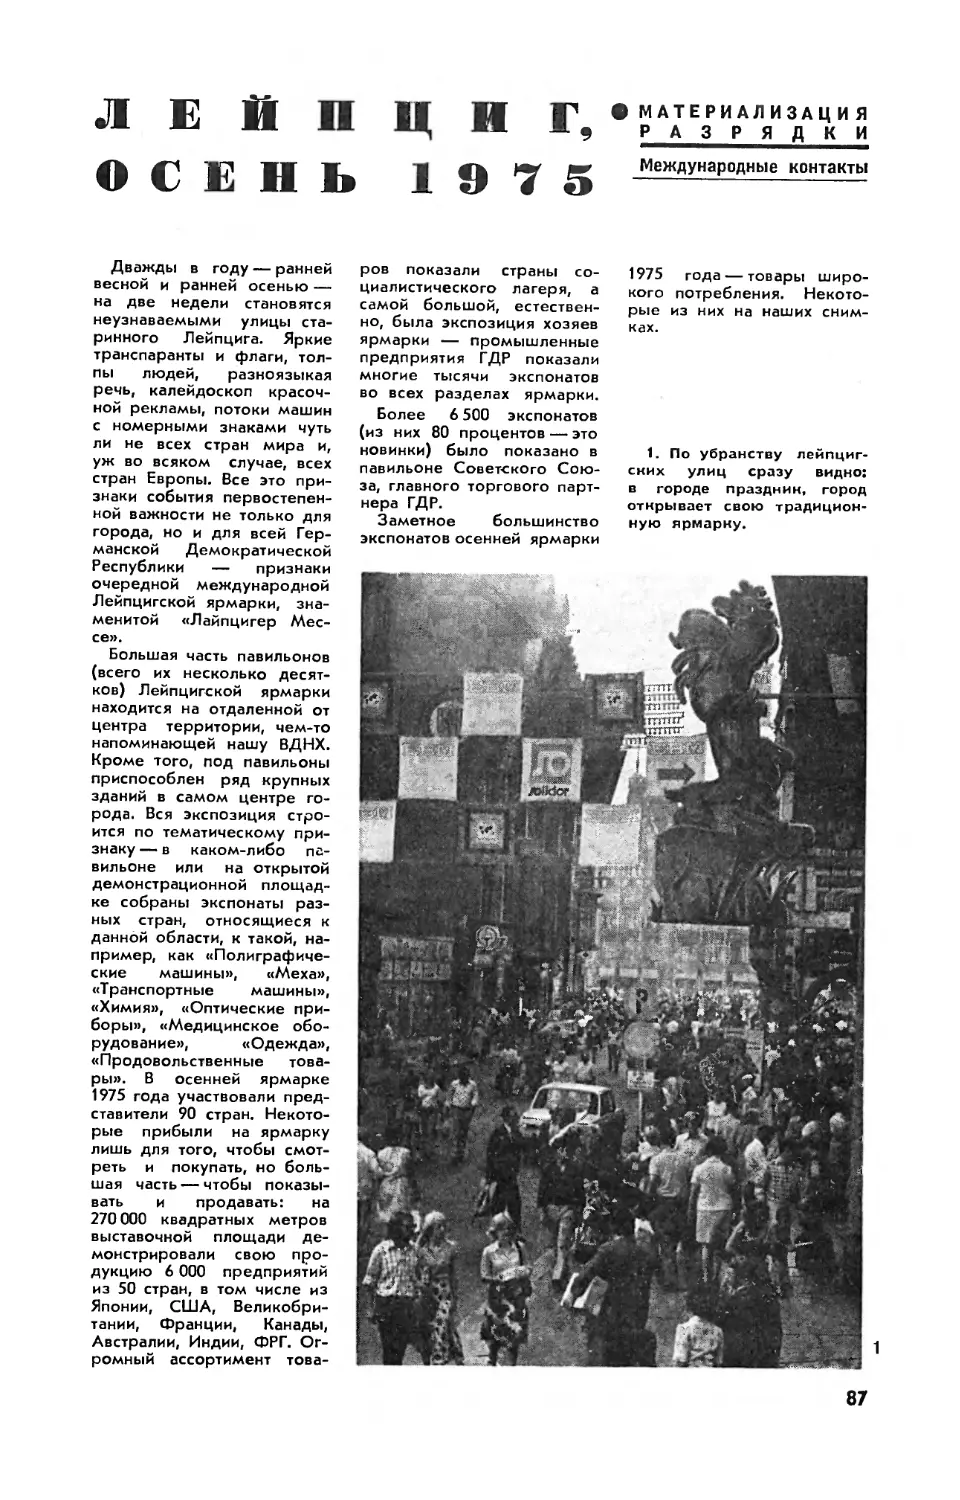 Р. СВОРЕНЬ — Лейпциг, осень 1975